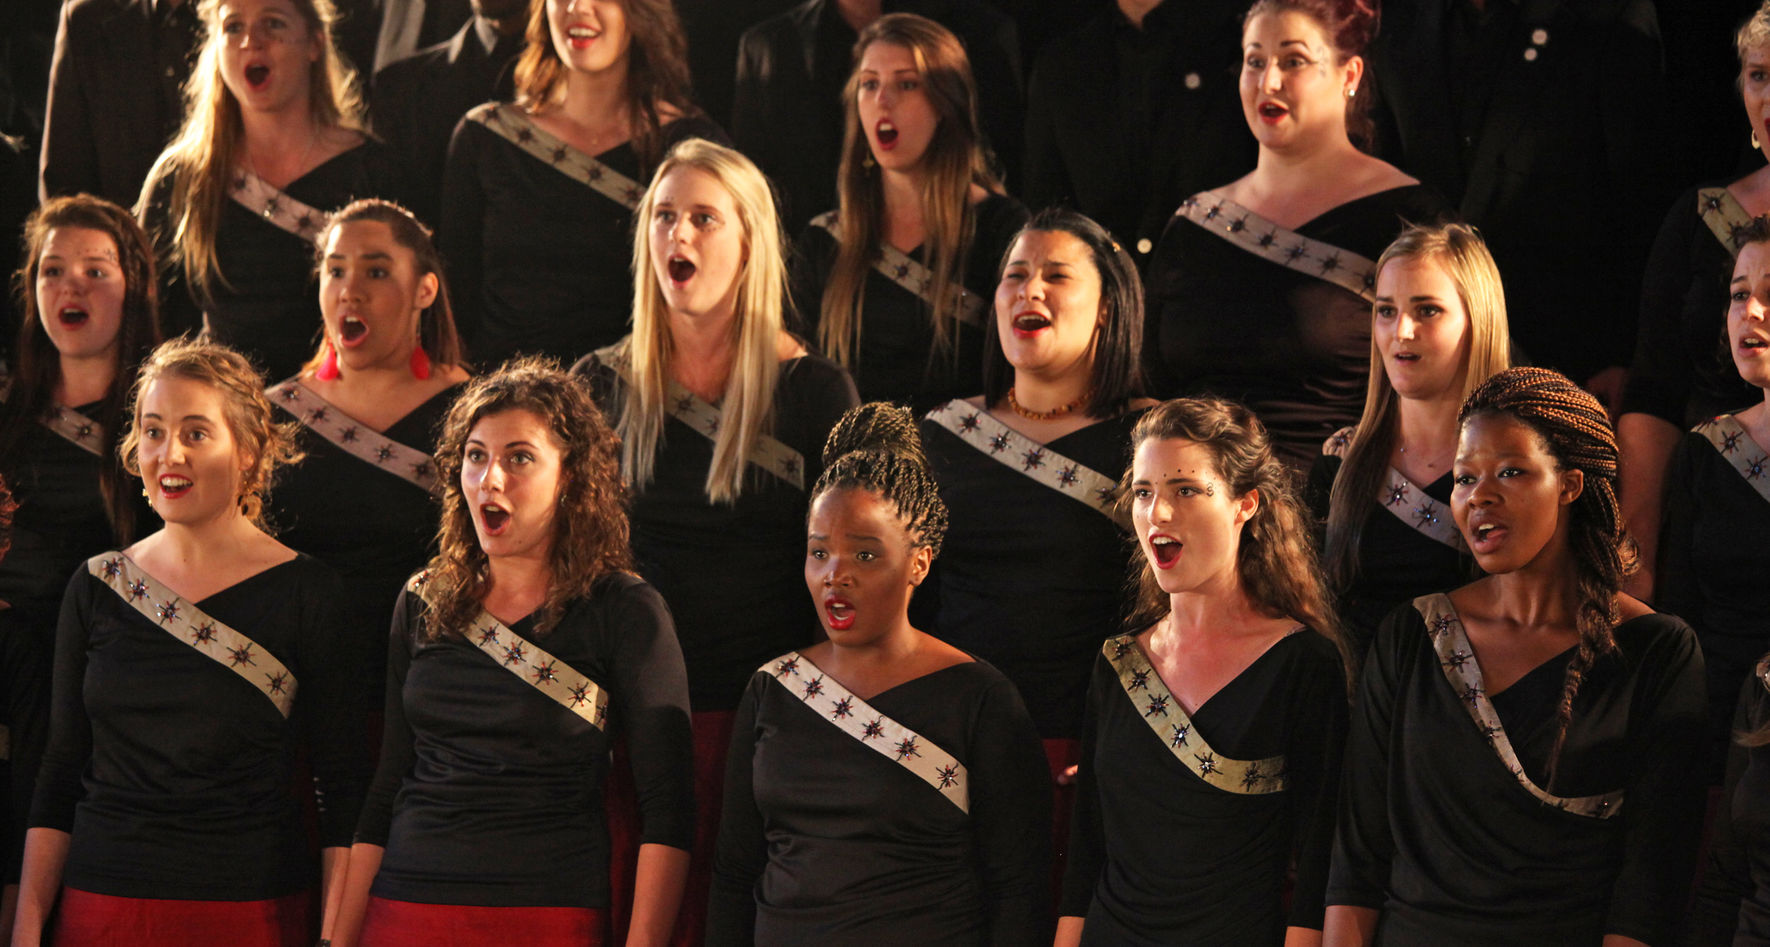 The Stellenbosch University Choir